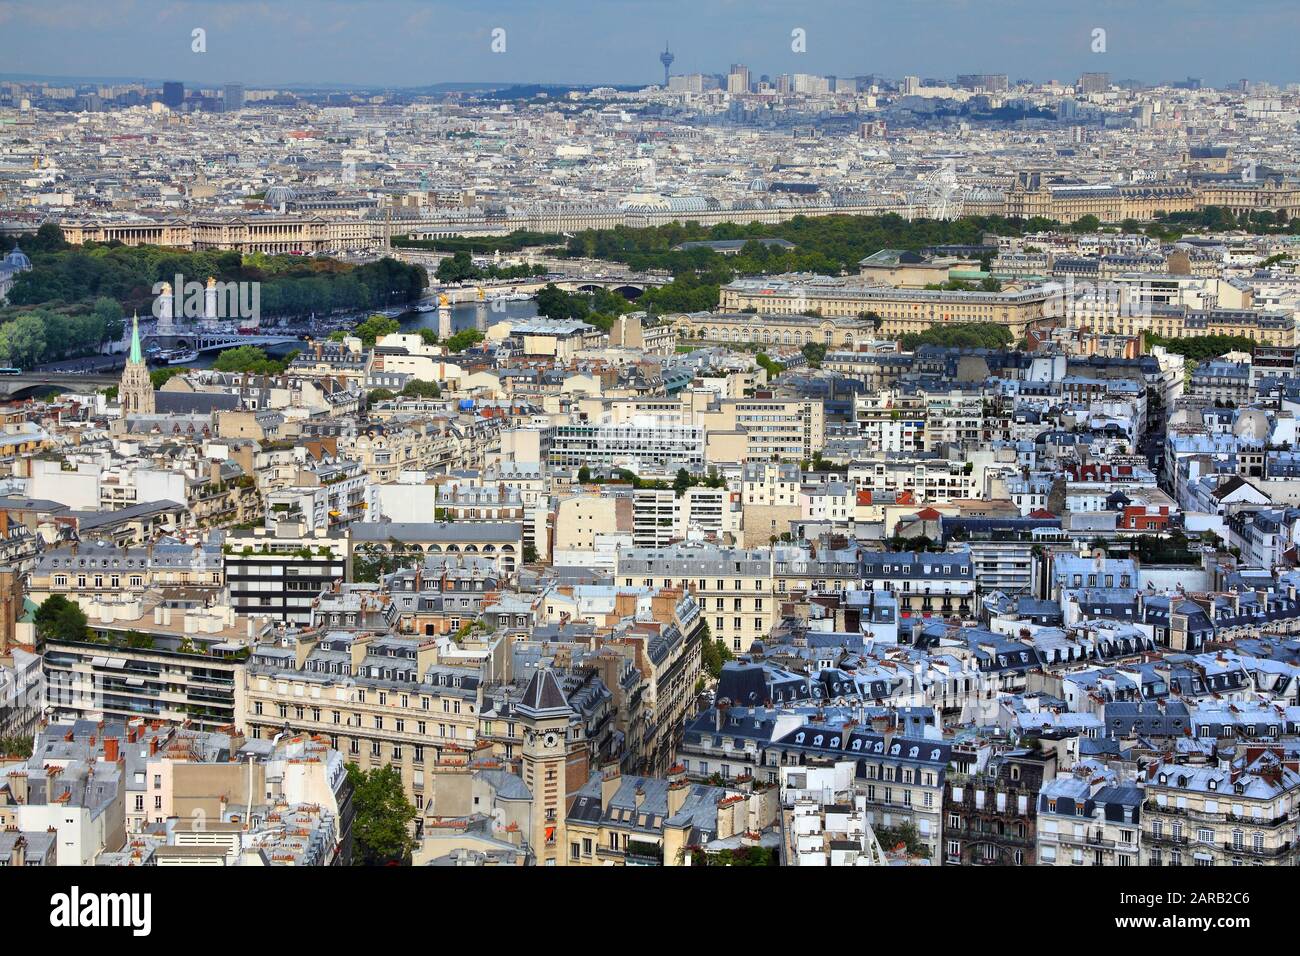 Paris cityscape - veduta aerea della capitale della Francia. Louvre attraverso il fiume. Foto Stock